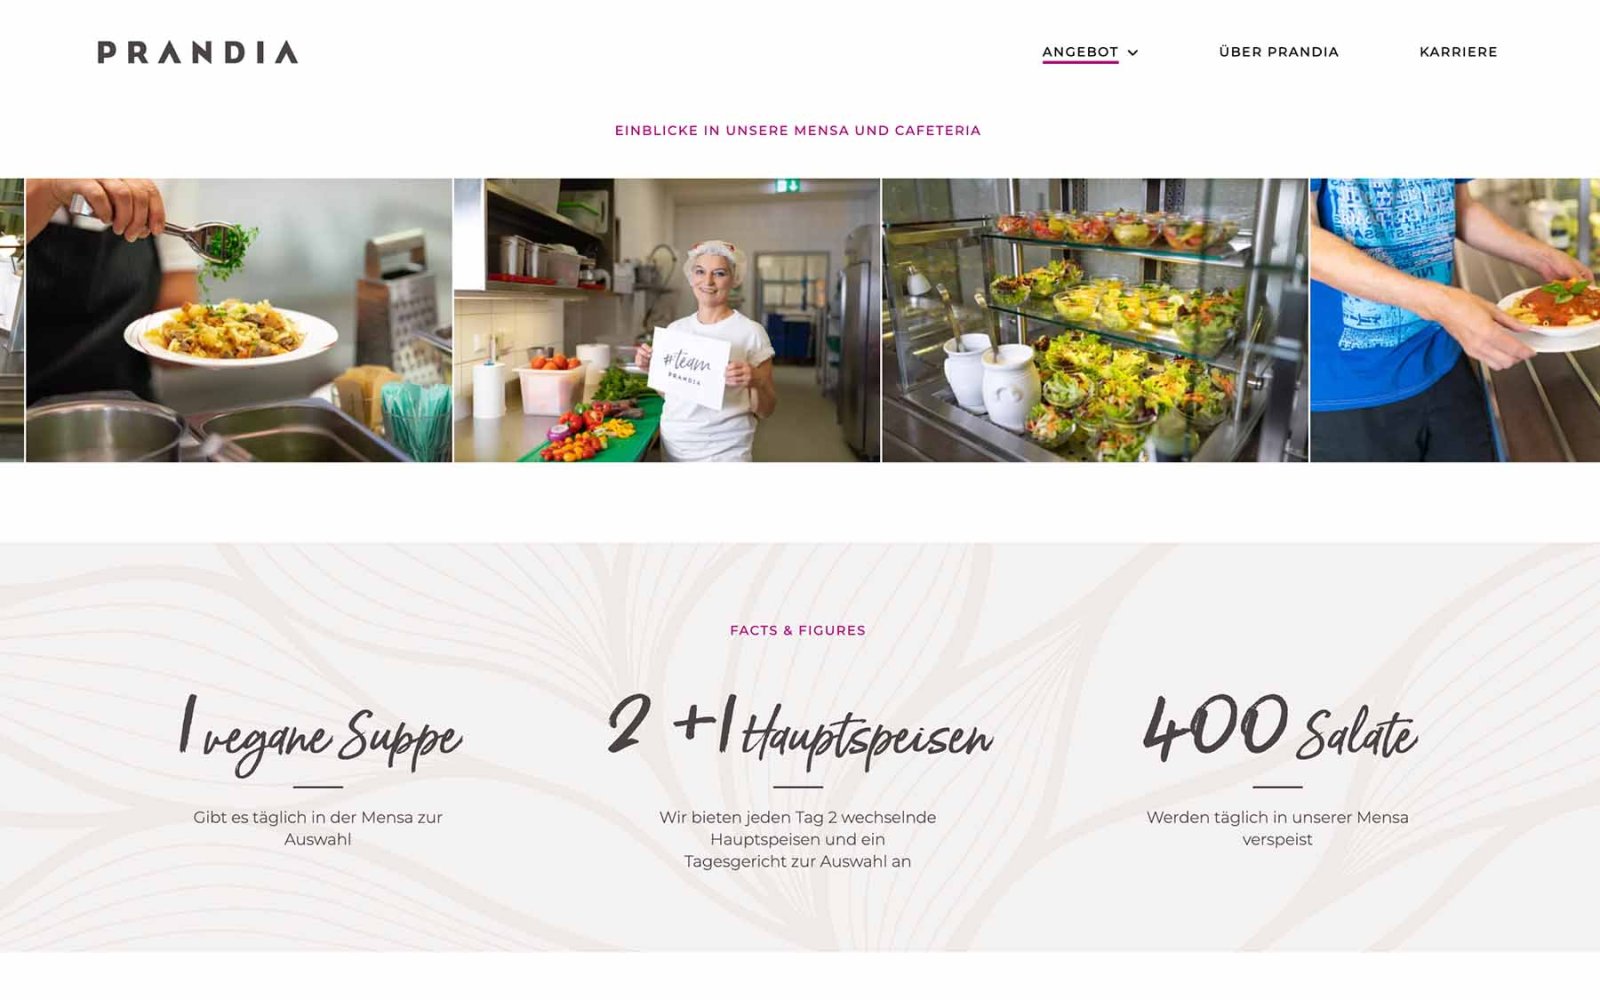 Gastronomie-Website Prandia – Angebote. Bildleiste mit Infotext.